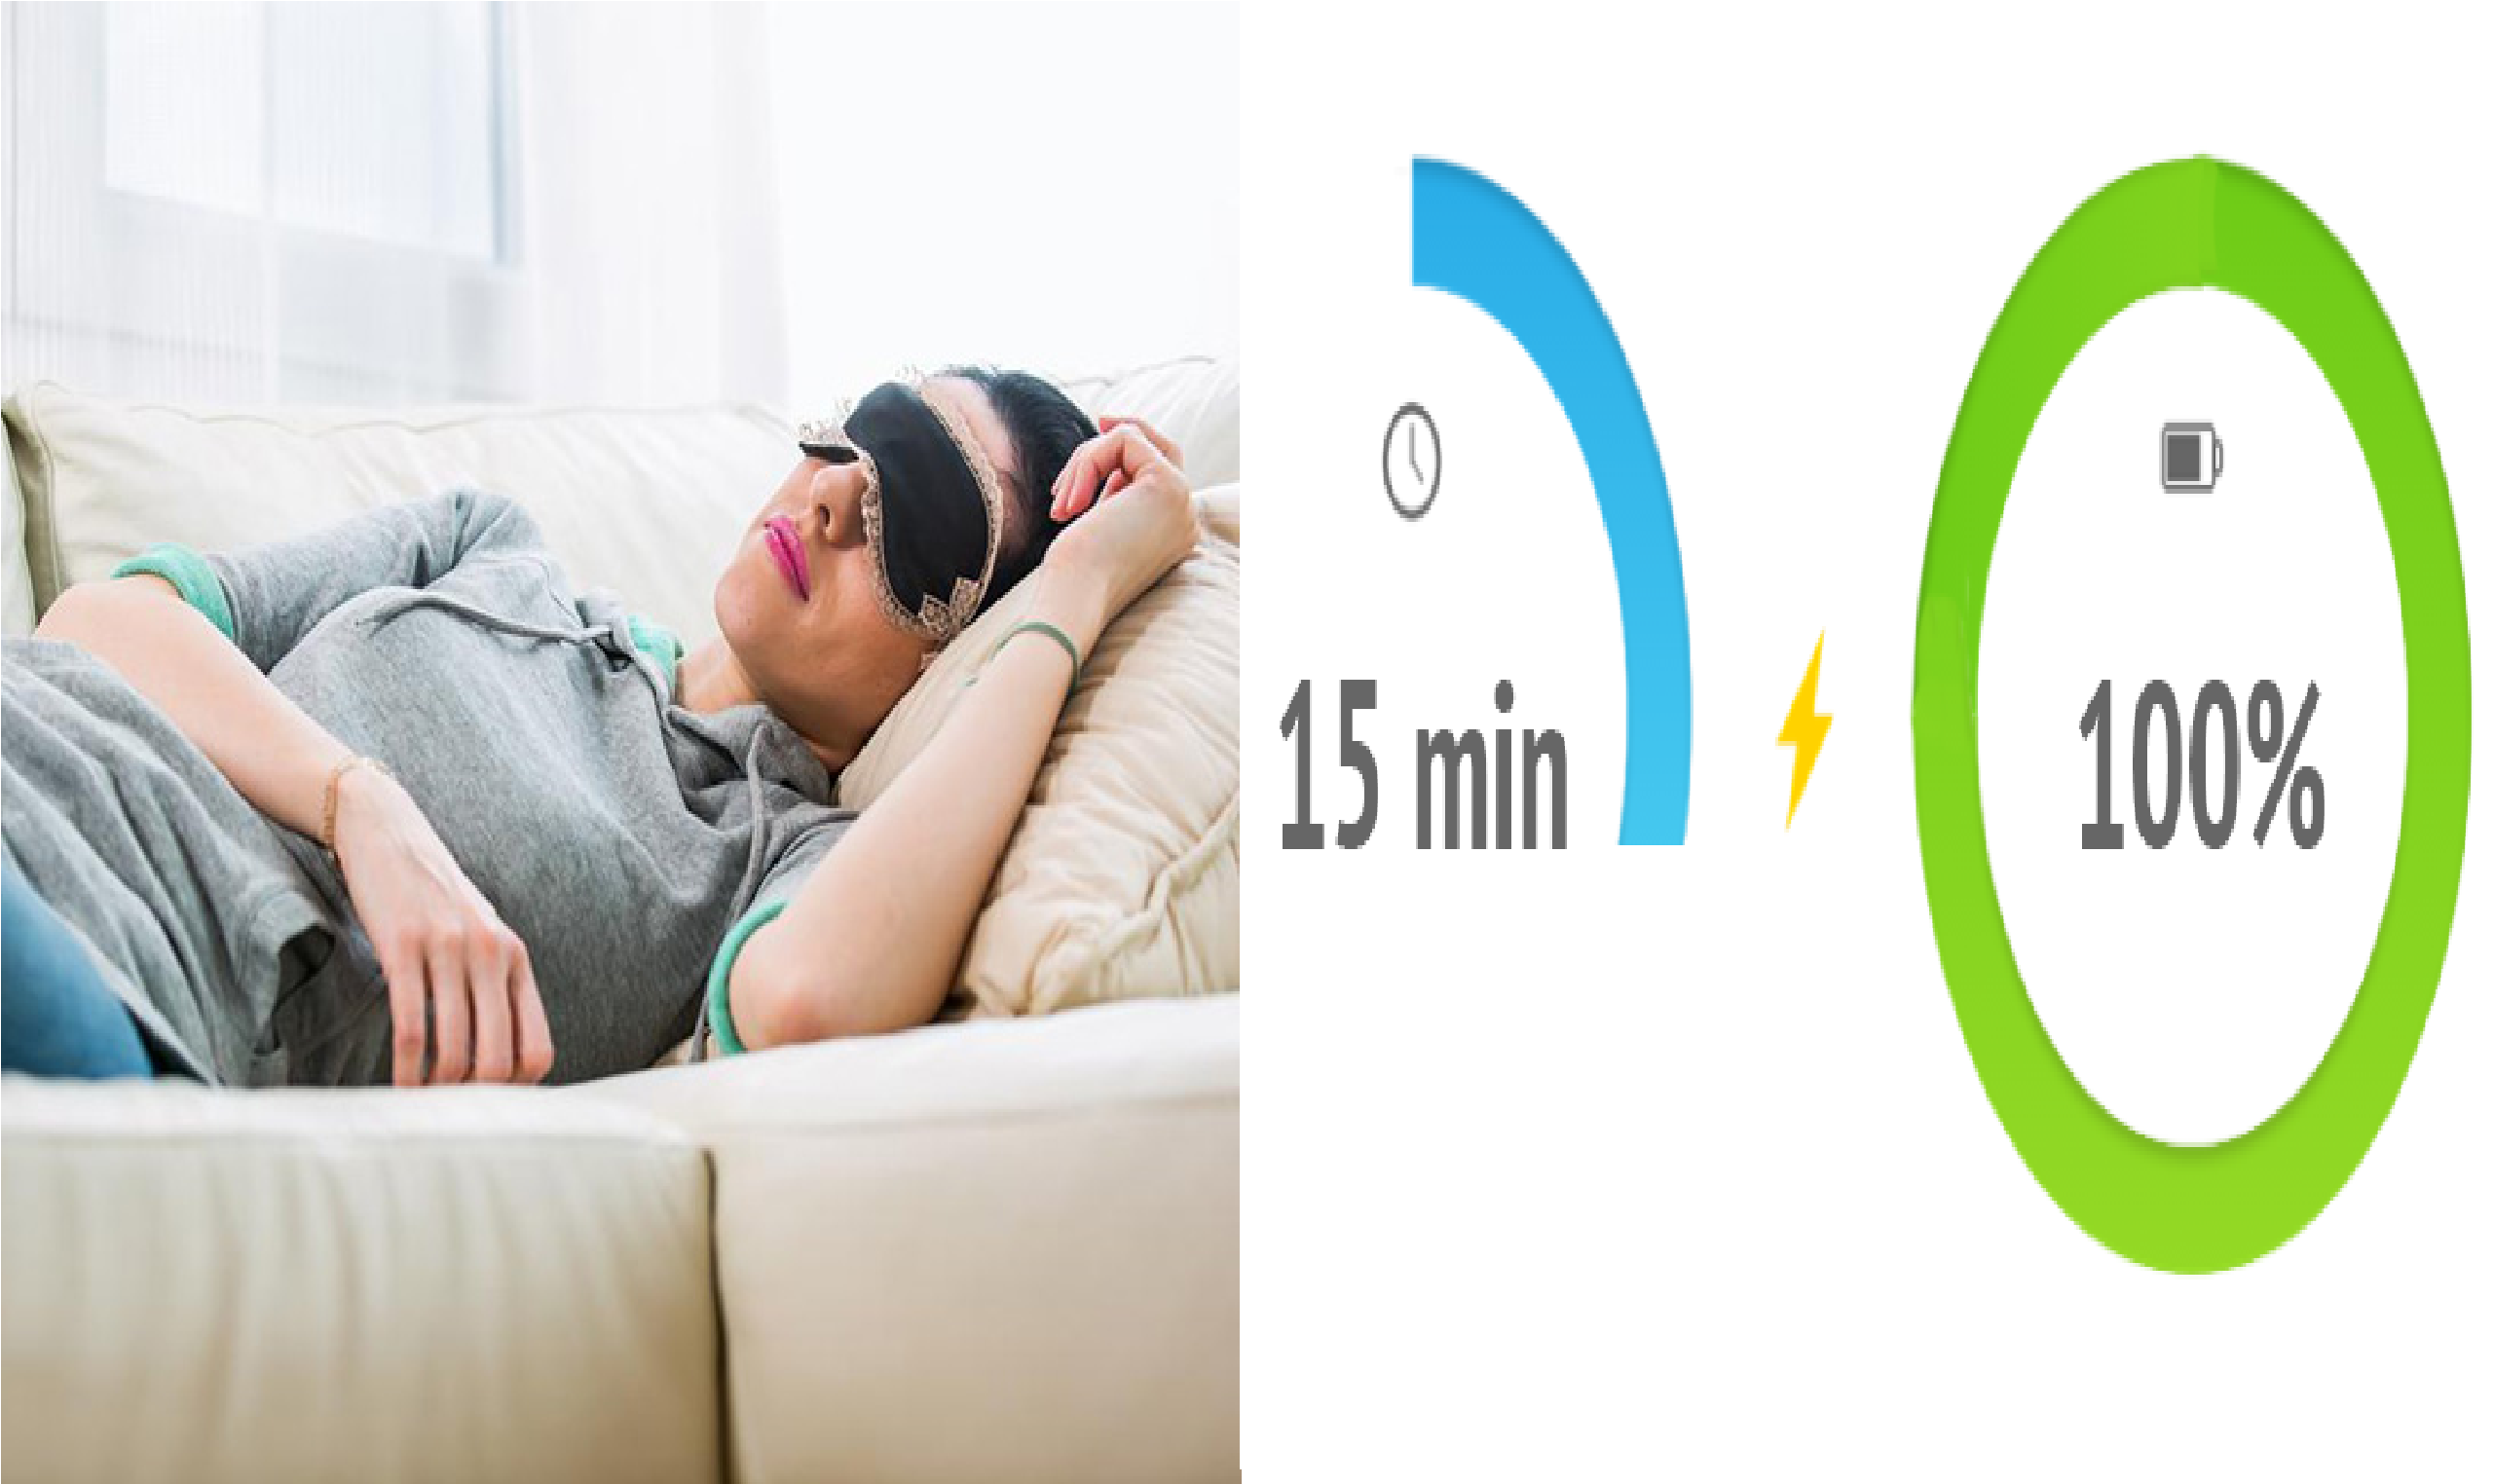 Giấc ngủ trưa kéo dài 15 phút sẽ giúp cơ thể bạn được thả lỏng, nạp lại năng lượng cho một buổi chiều làm việc hiệu quả. Đồ họa: Minh Quang